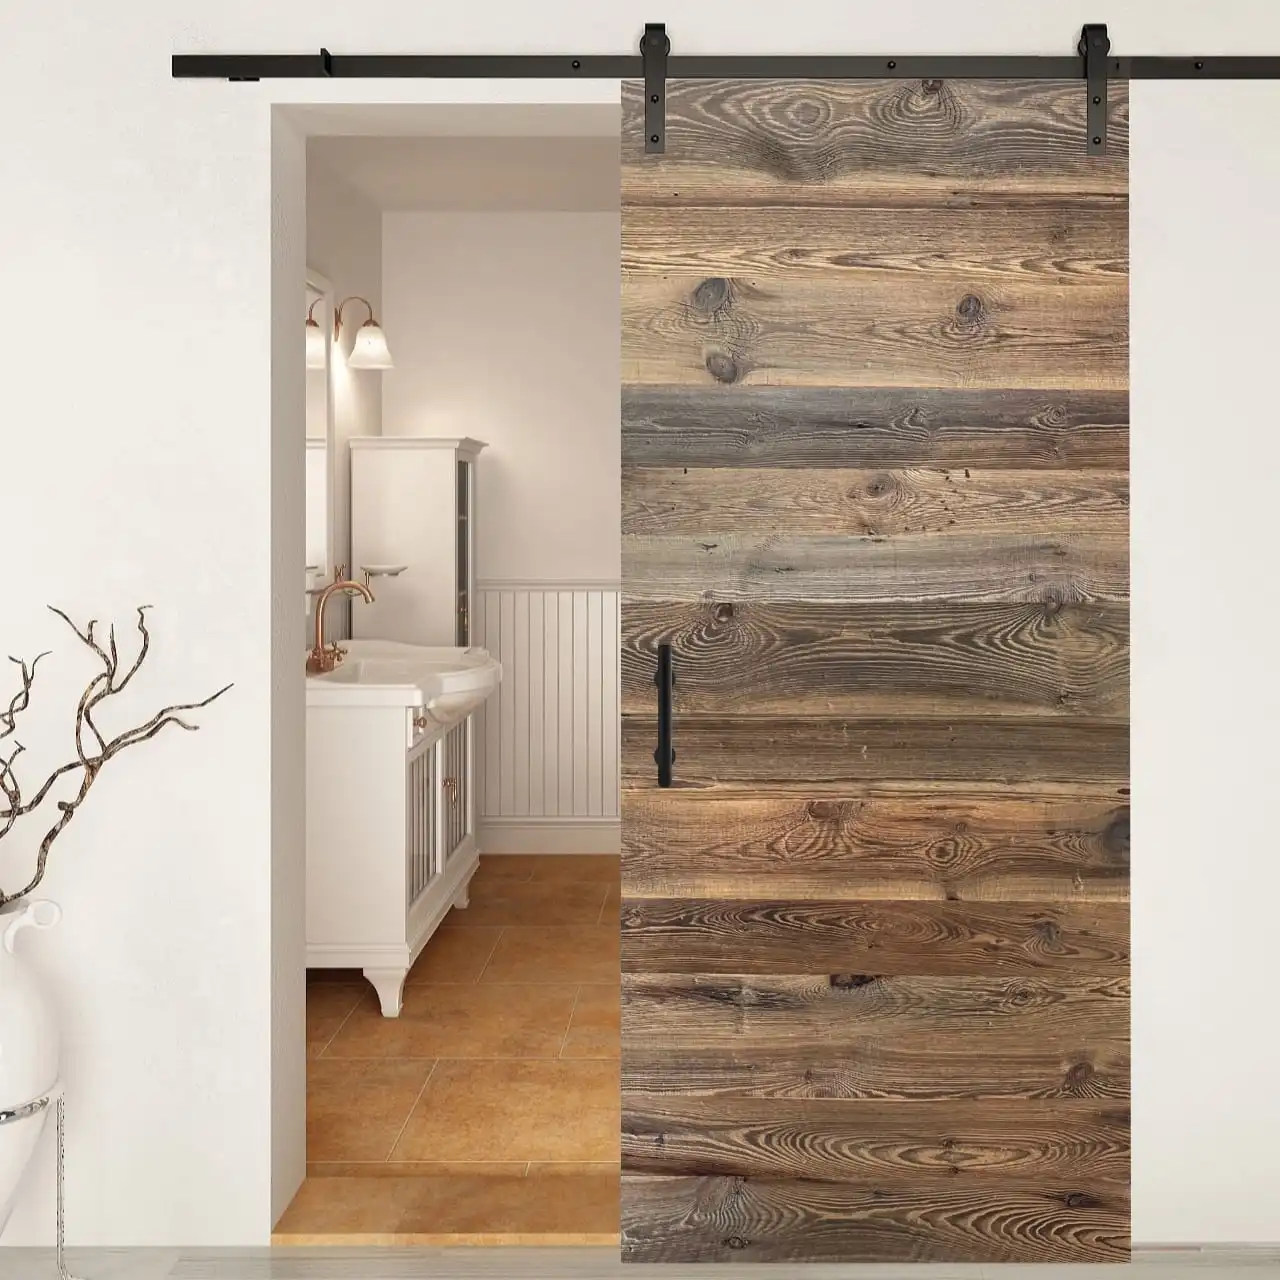  Une porte de grange coulissante au design rustique en bois sépare une salle de bain d'une pièce adjacente. 